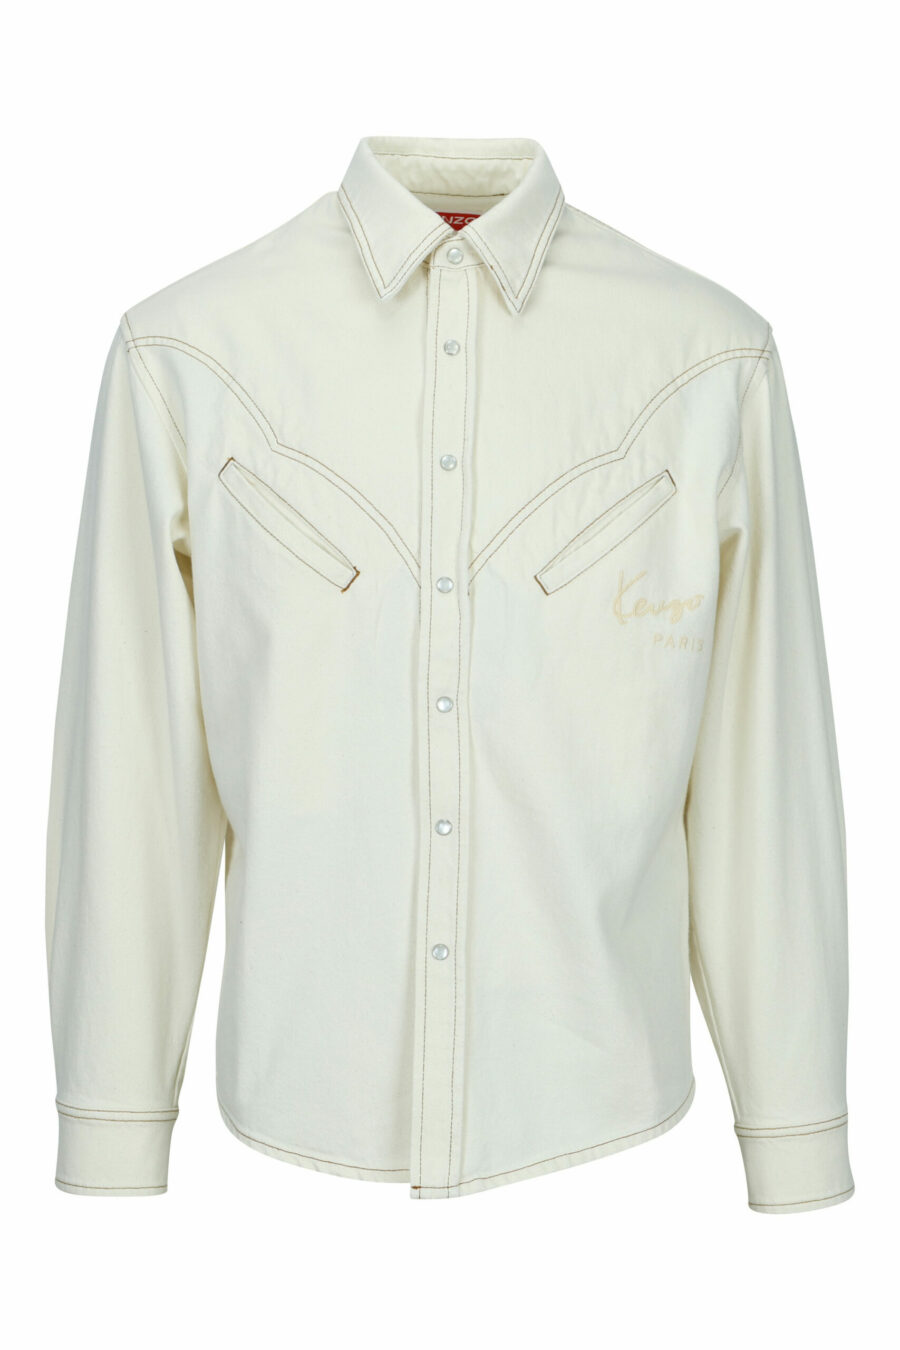 Camisa western de ganga branca com logótipo - 3612230590823 scaled